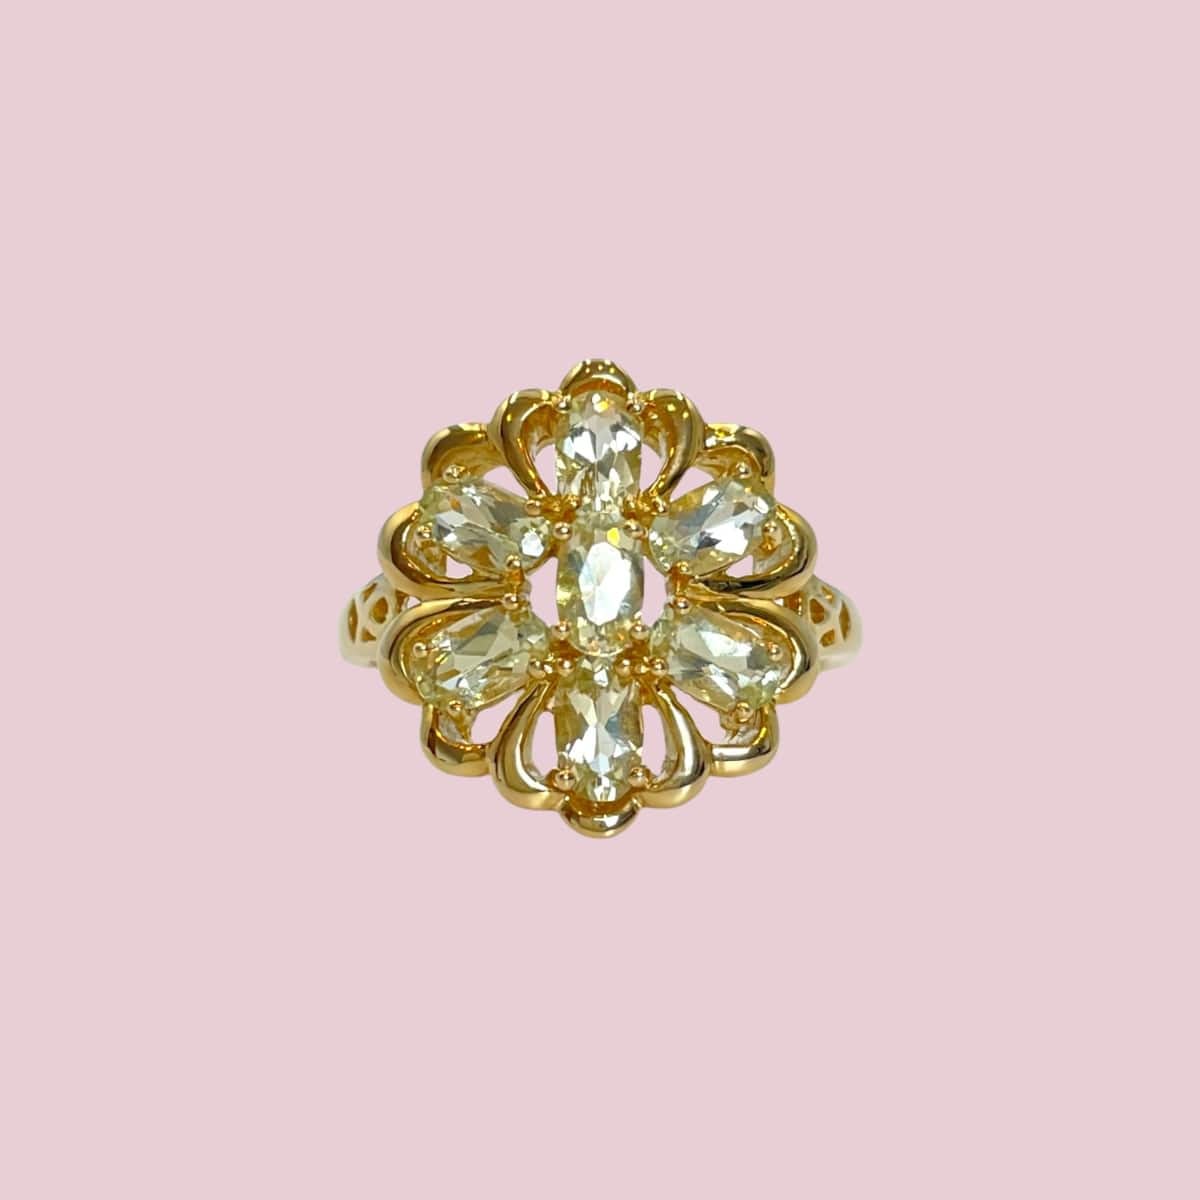 vintage bloem ring goud met groene amethist